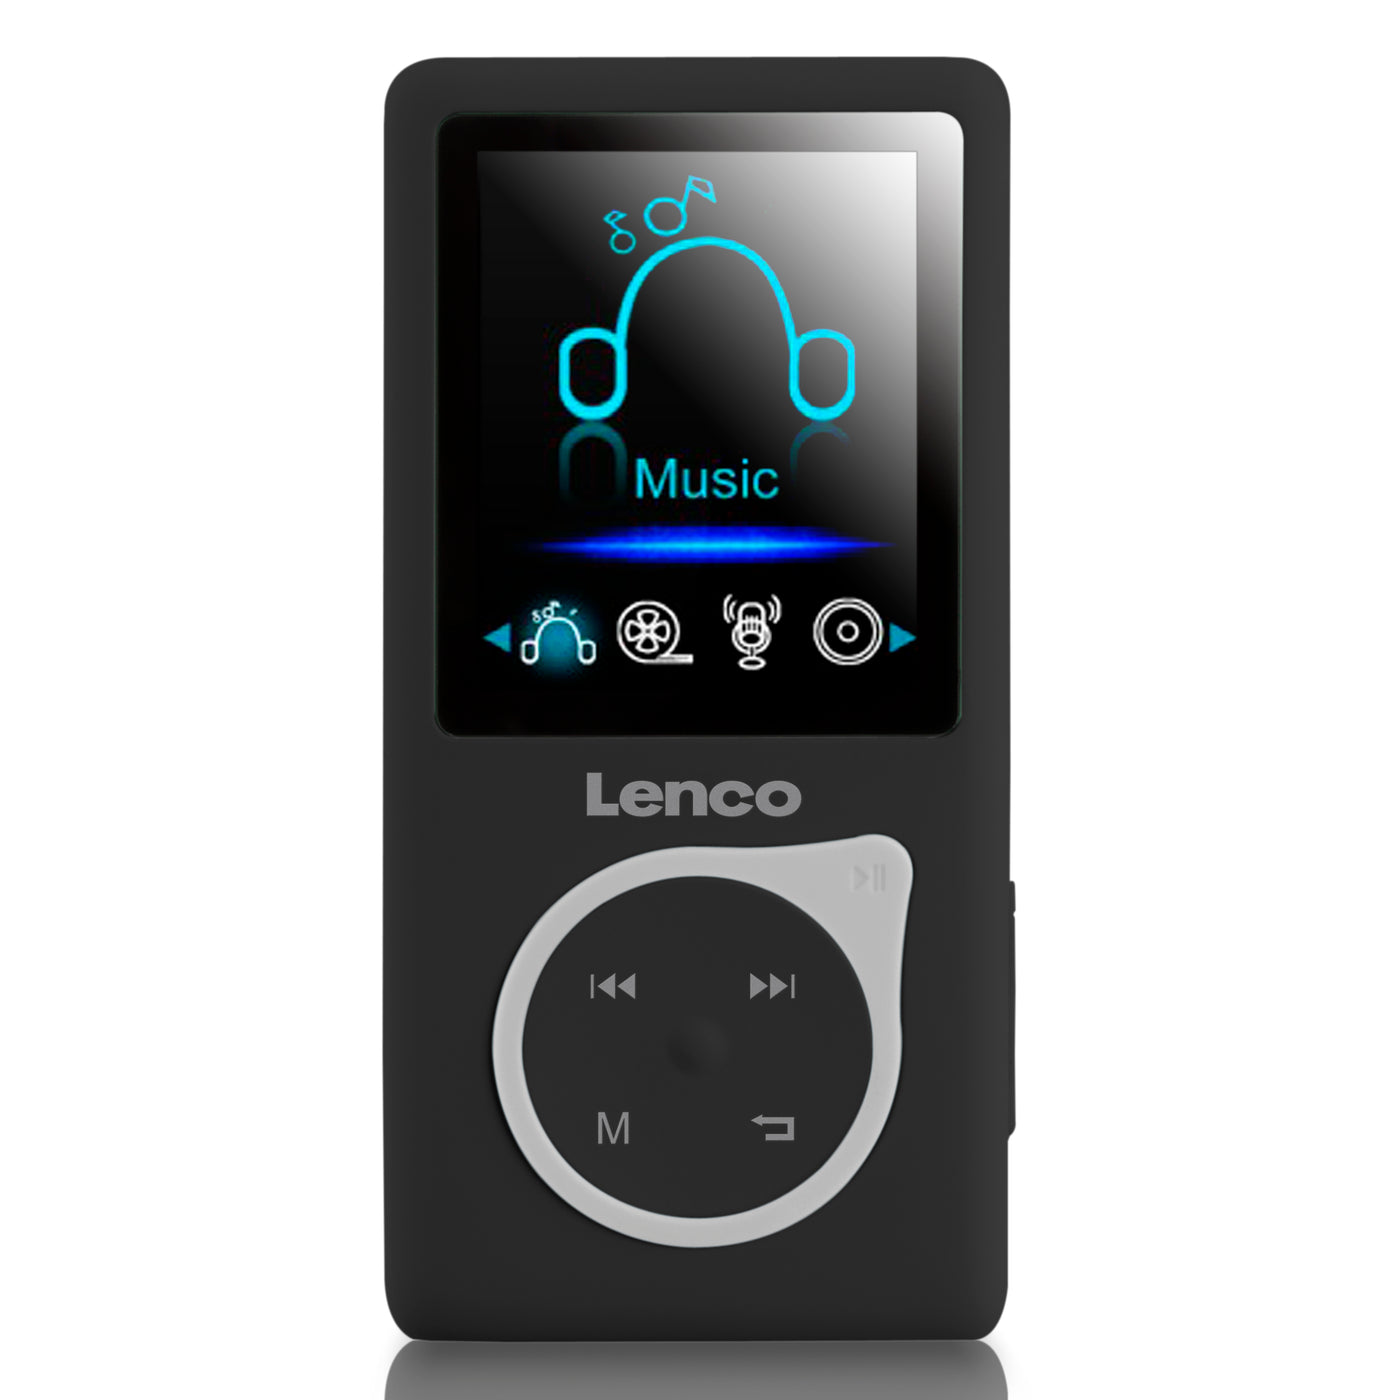 Lenco Xemio-668 Black - Lecteur MP3/MP4 avec carte micro SD de 8 Go - Noir